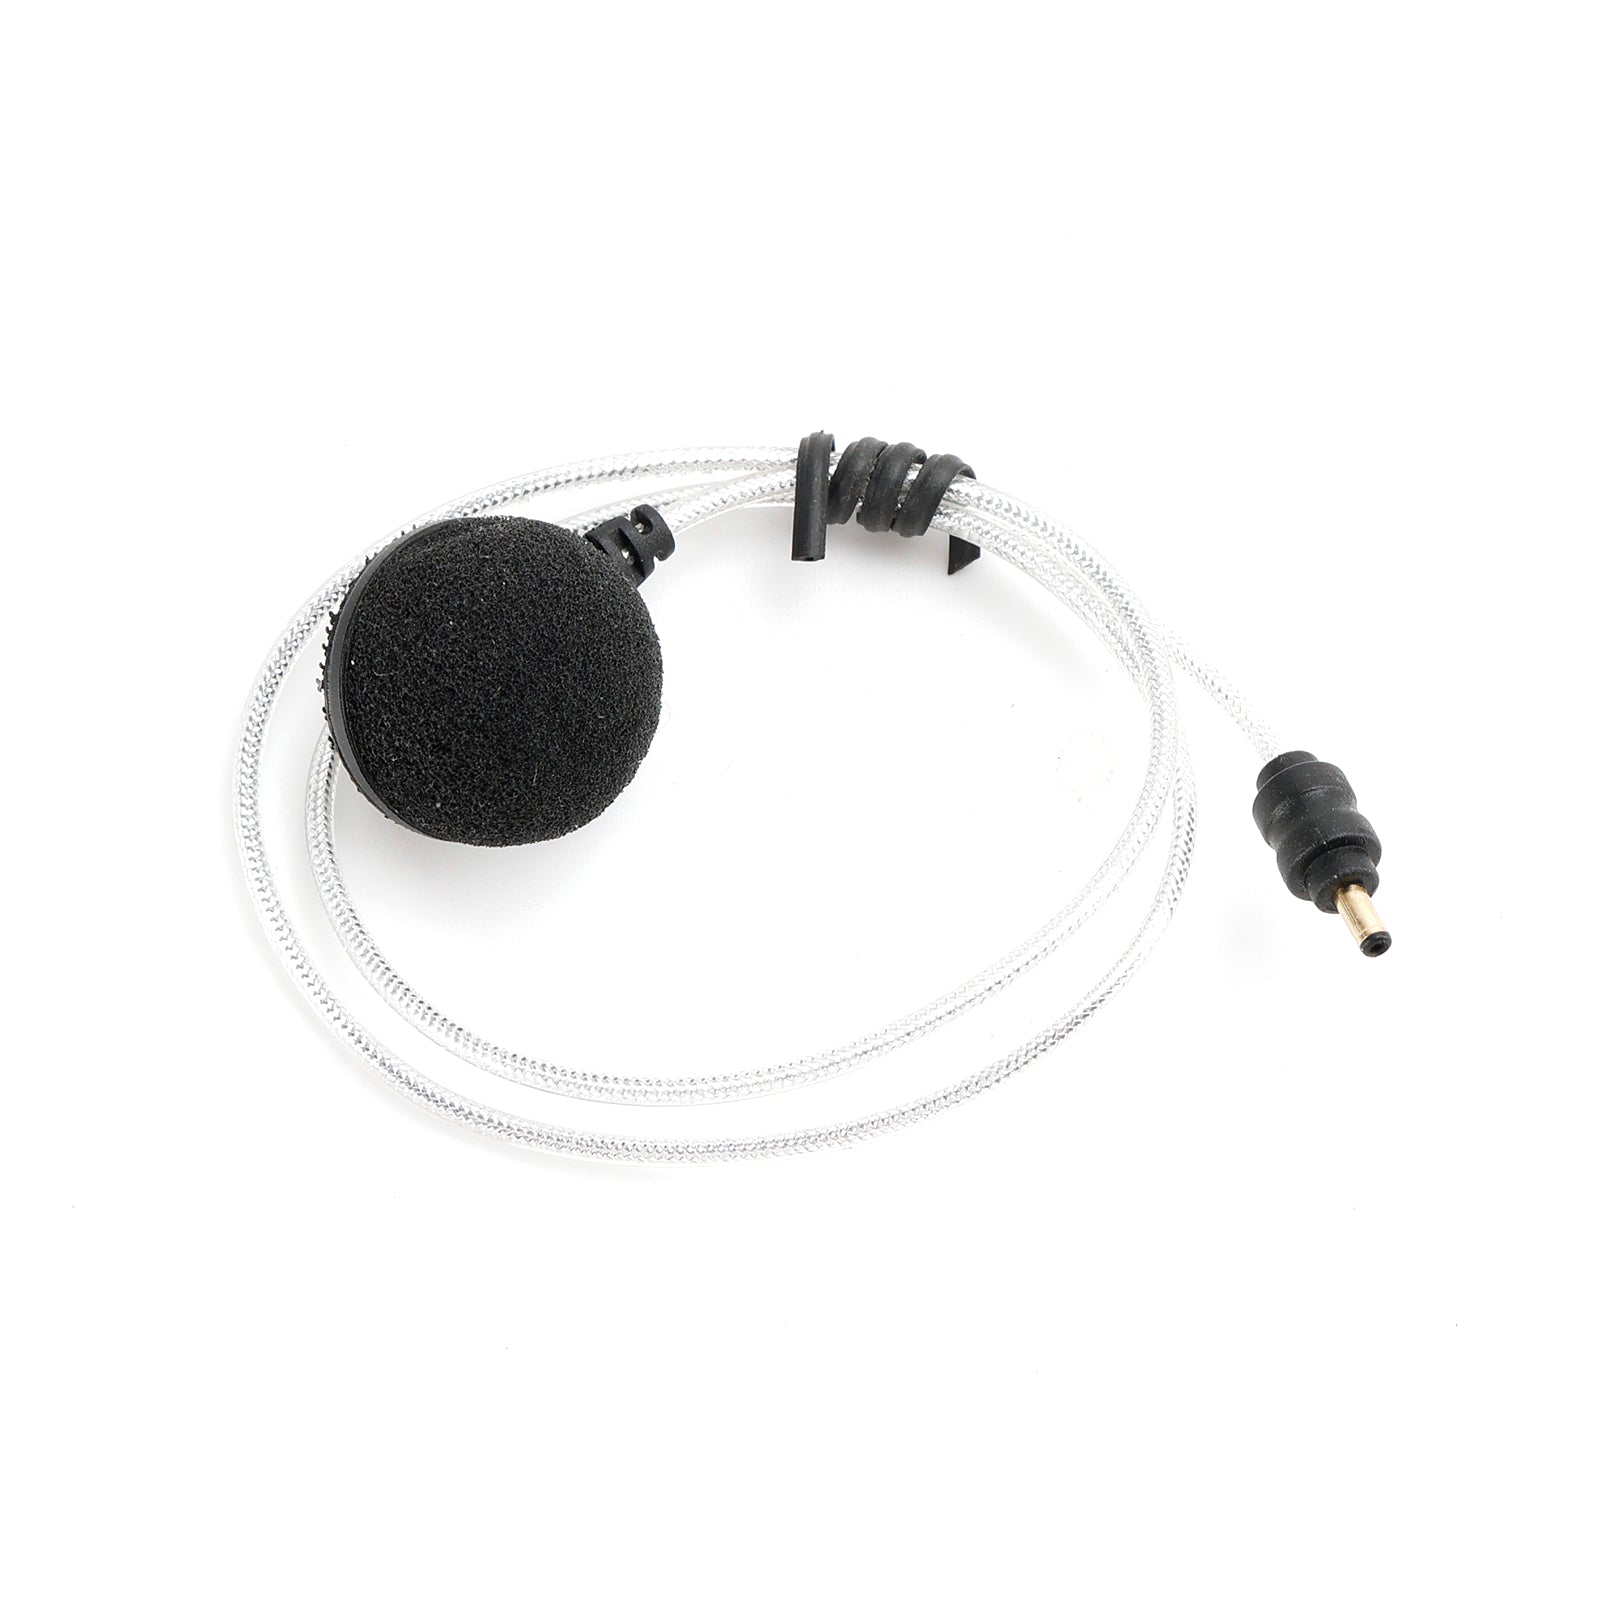 T1 casque sans fil Bluetooth V5.0 casque écouteur